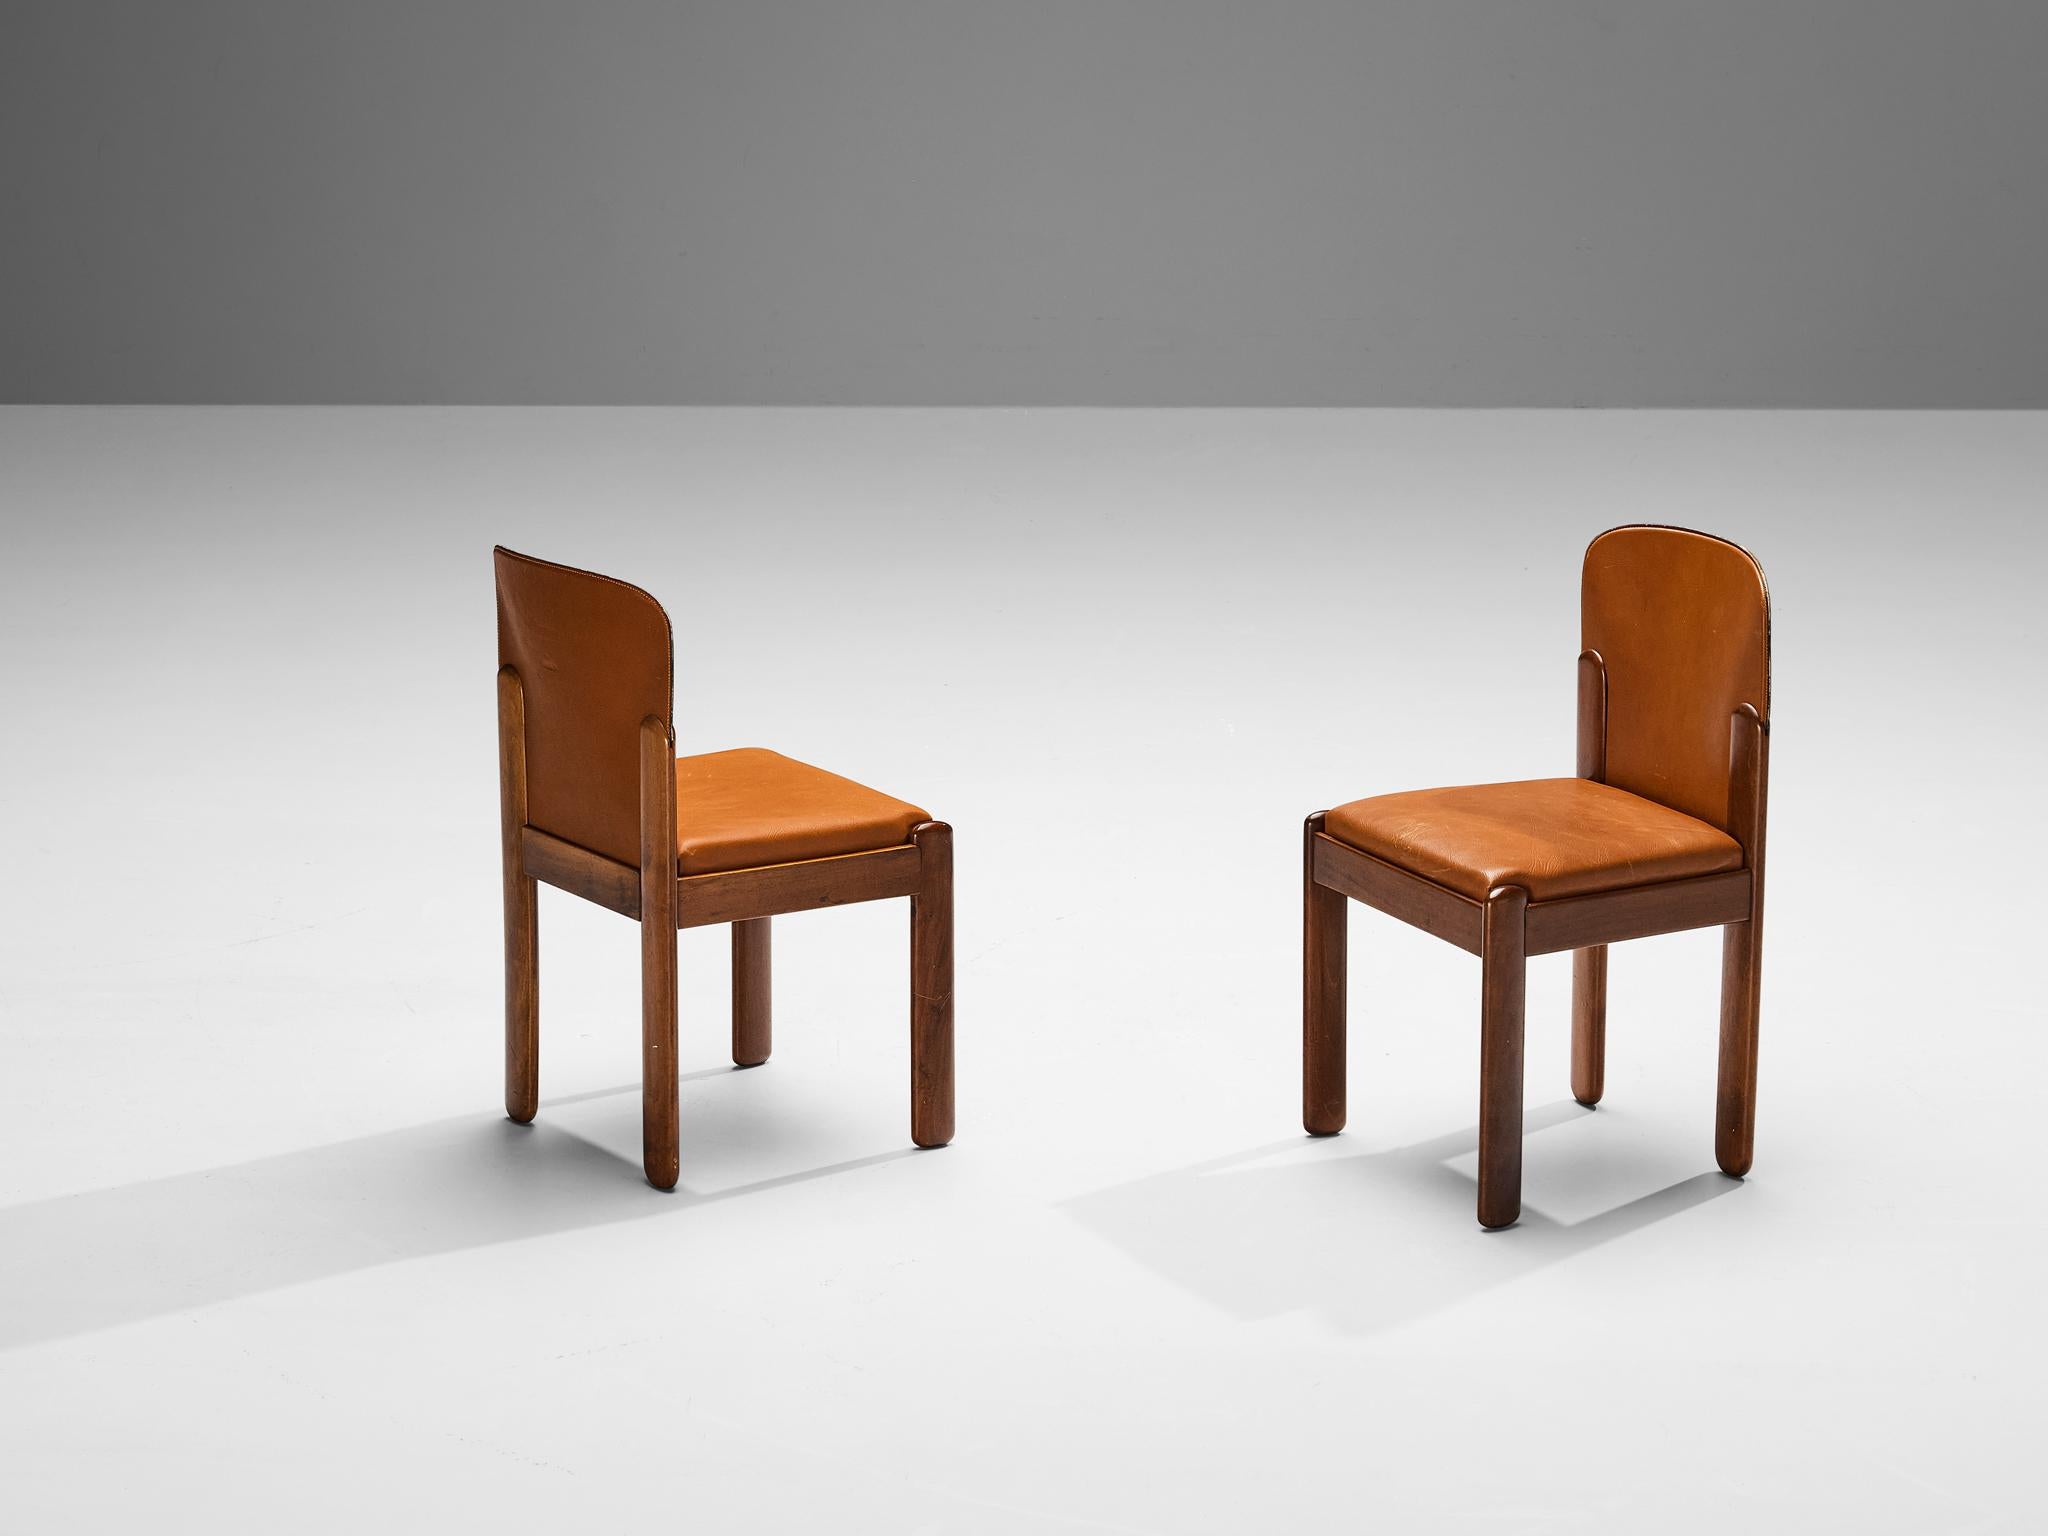 Silvio Coppola pour Bernini, paire de chaises de salle à manger, modèle '330', cuir cognac, noyer, Italie, années 1960

Magnifique ensemble de chaises de salle à manger en cuir cognac et bois de noyer par le designer italien Silvio Coppola. Ces